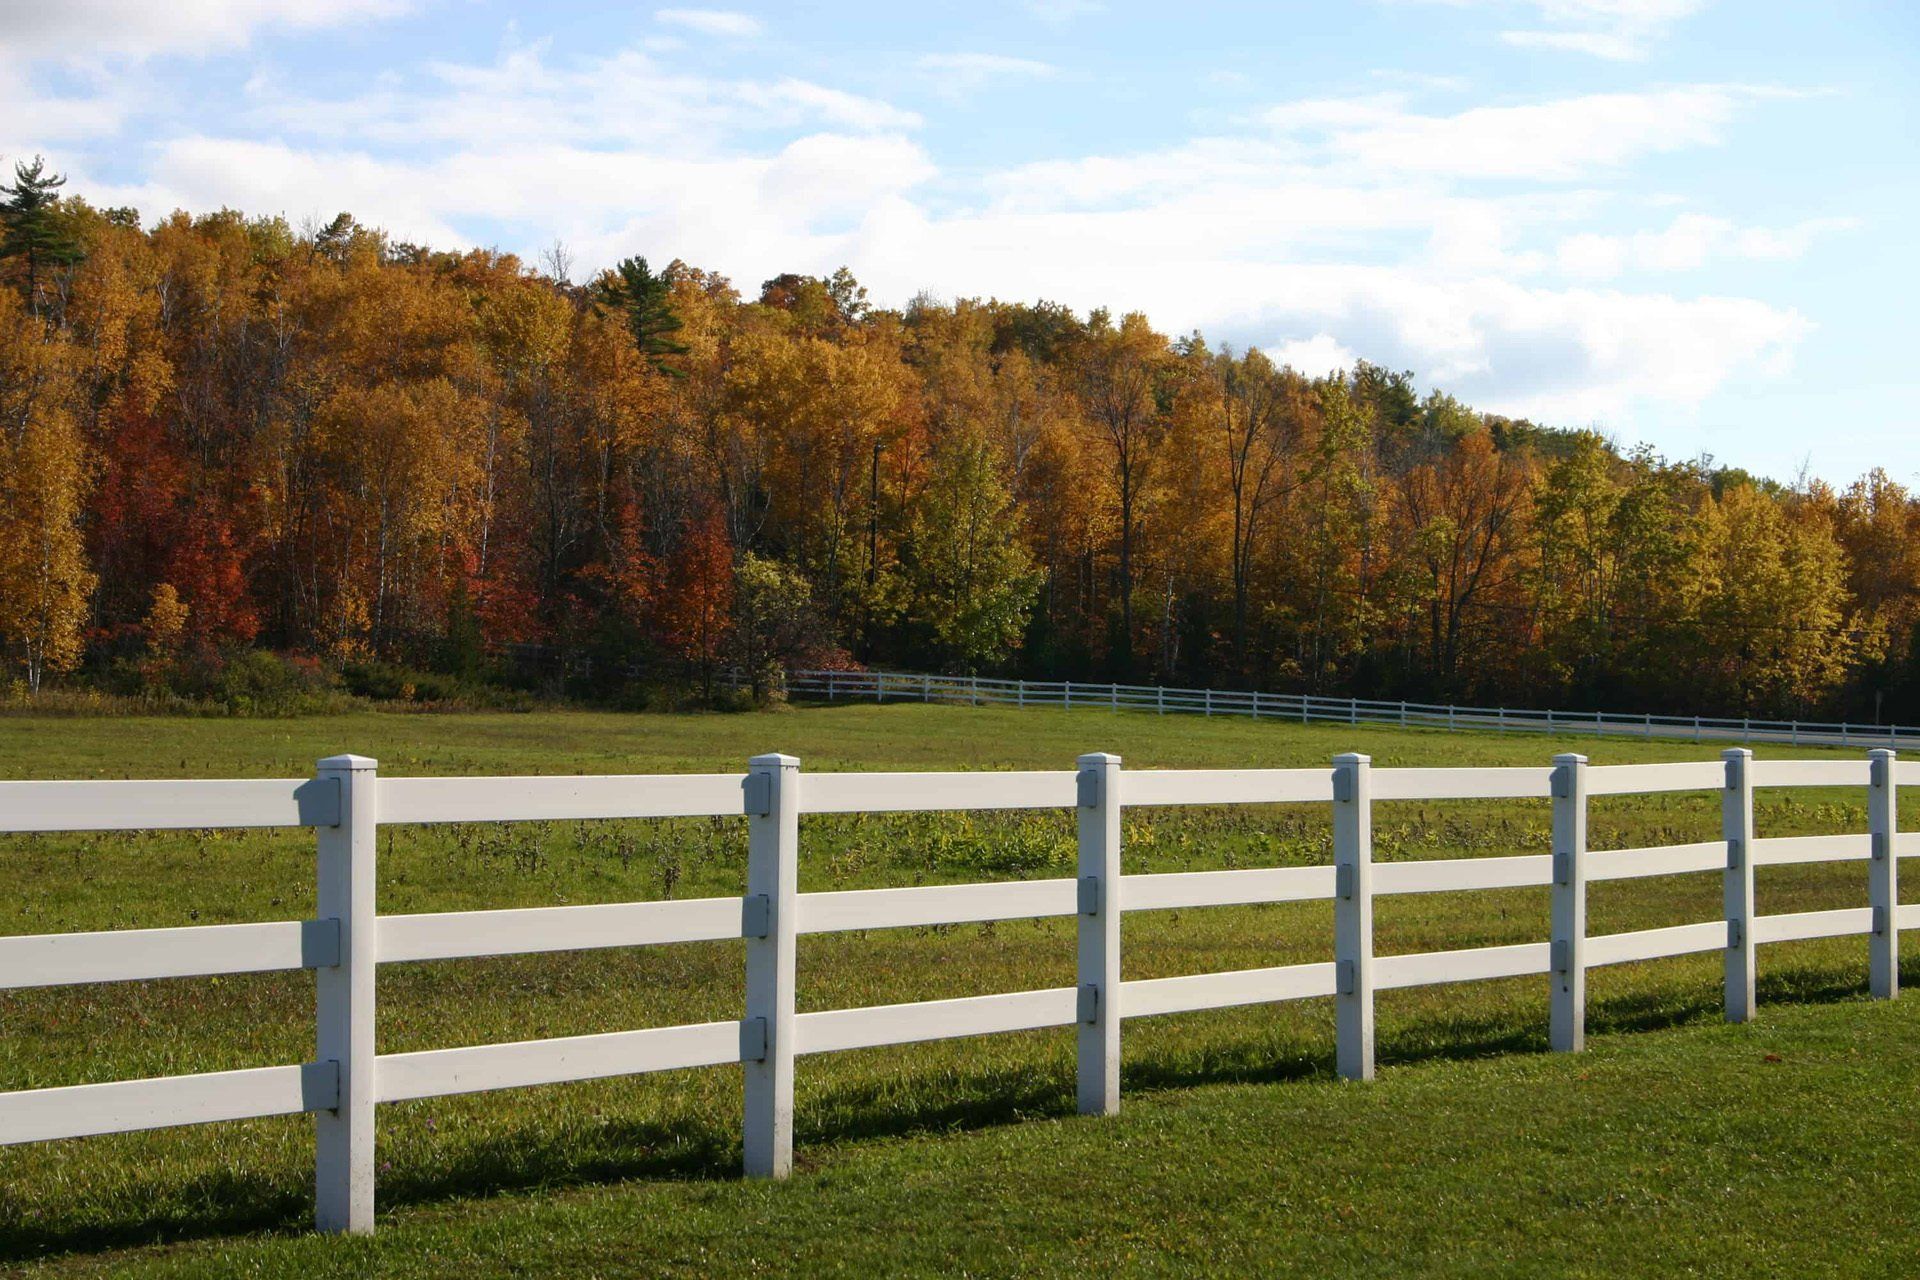 About Fence Companies Buffalo NY